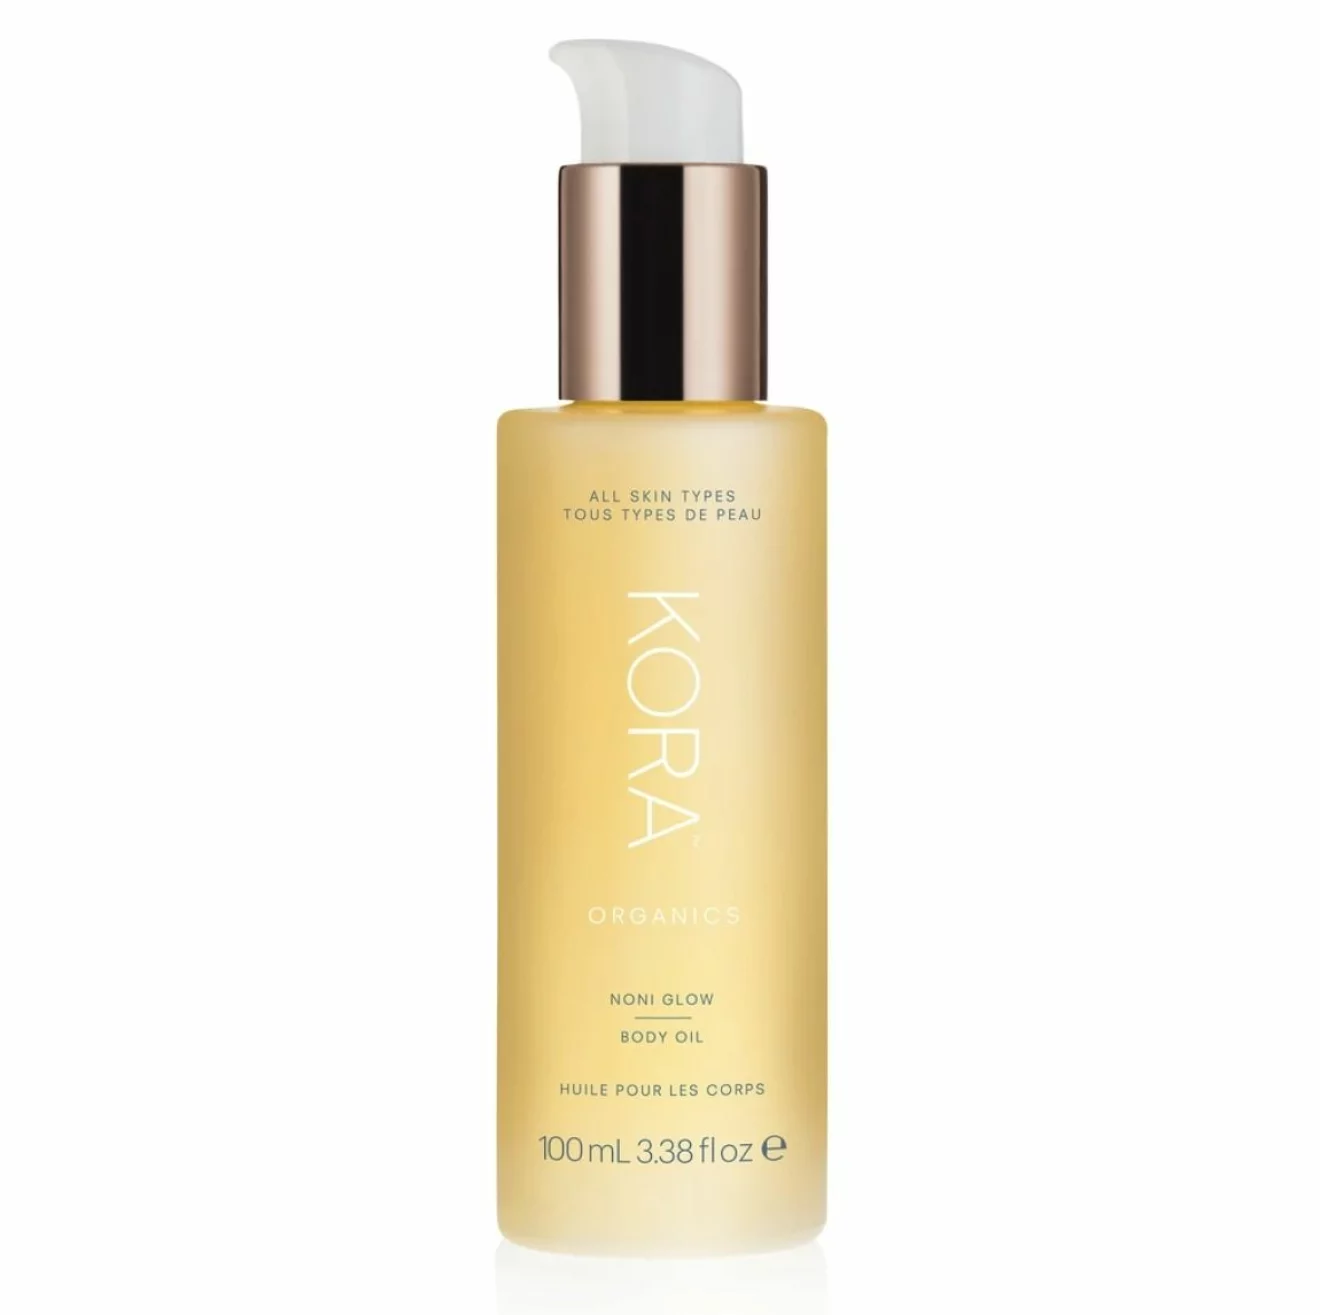 Noni glow body oil från Kora organics är kroppsoljan som enkelt och smidigt absorberas av torr hud.